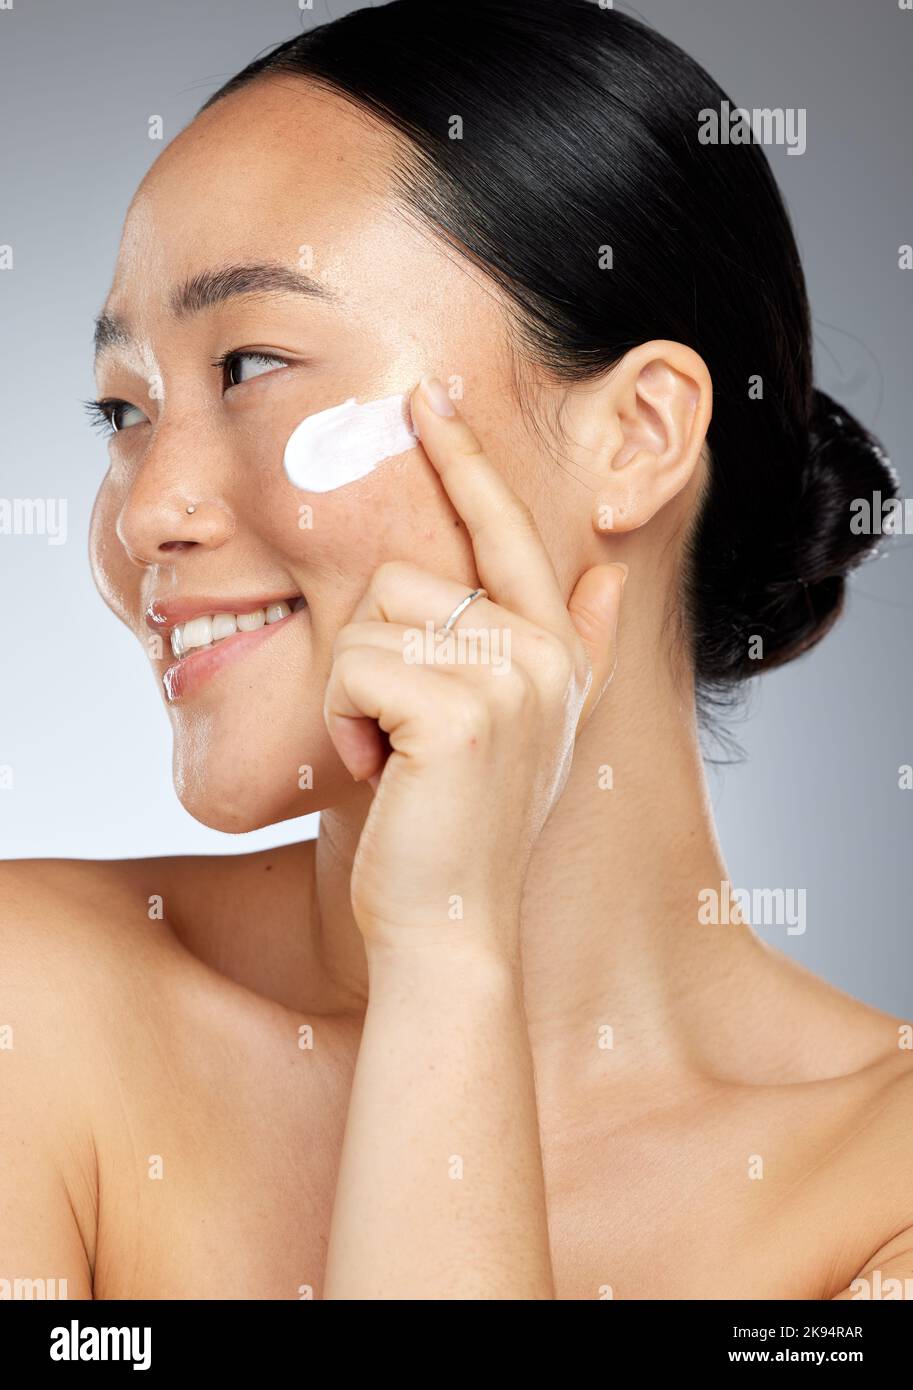 Crème de soin de peau coréenne, Happy et visage d'une femme avec un sourire en utilisant la lotion. Le bonheur d'une personne de Corée souriant sur le bien-être du visage Banque D'Images